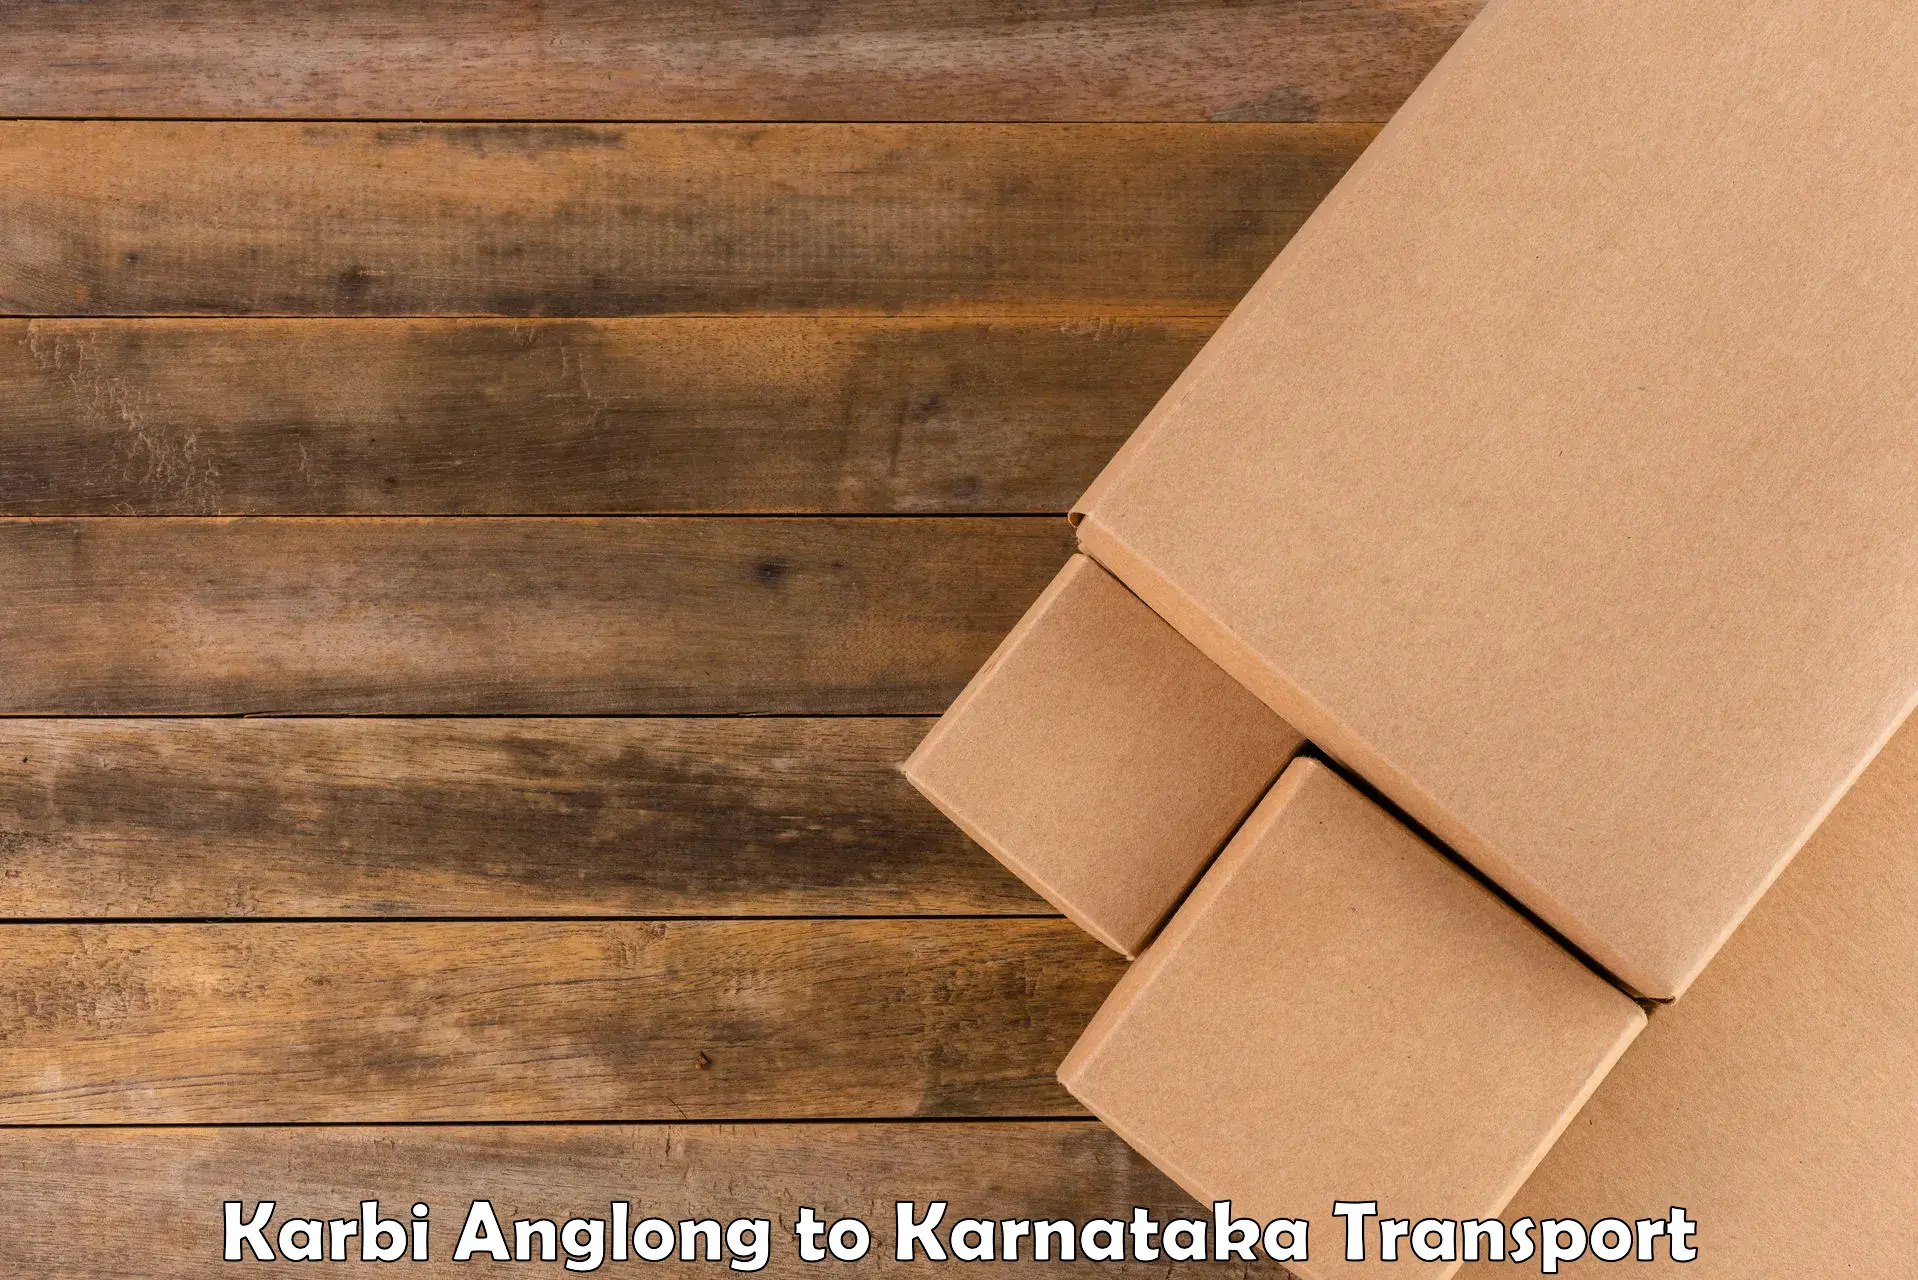 Vehicle parcel service Karbi Anglong to Karnataka